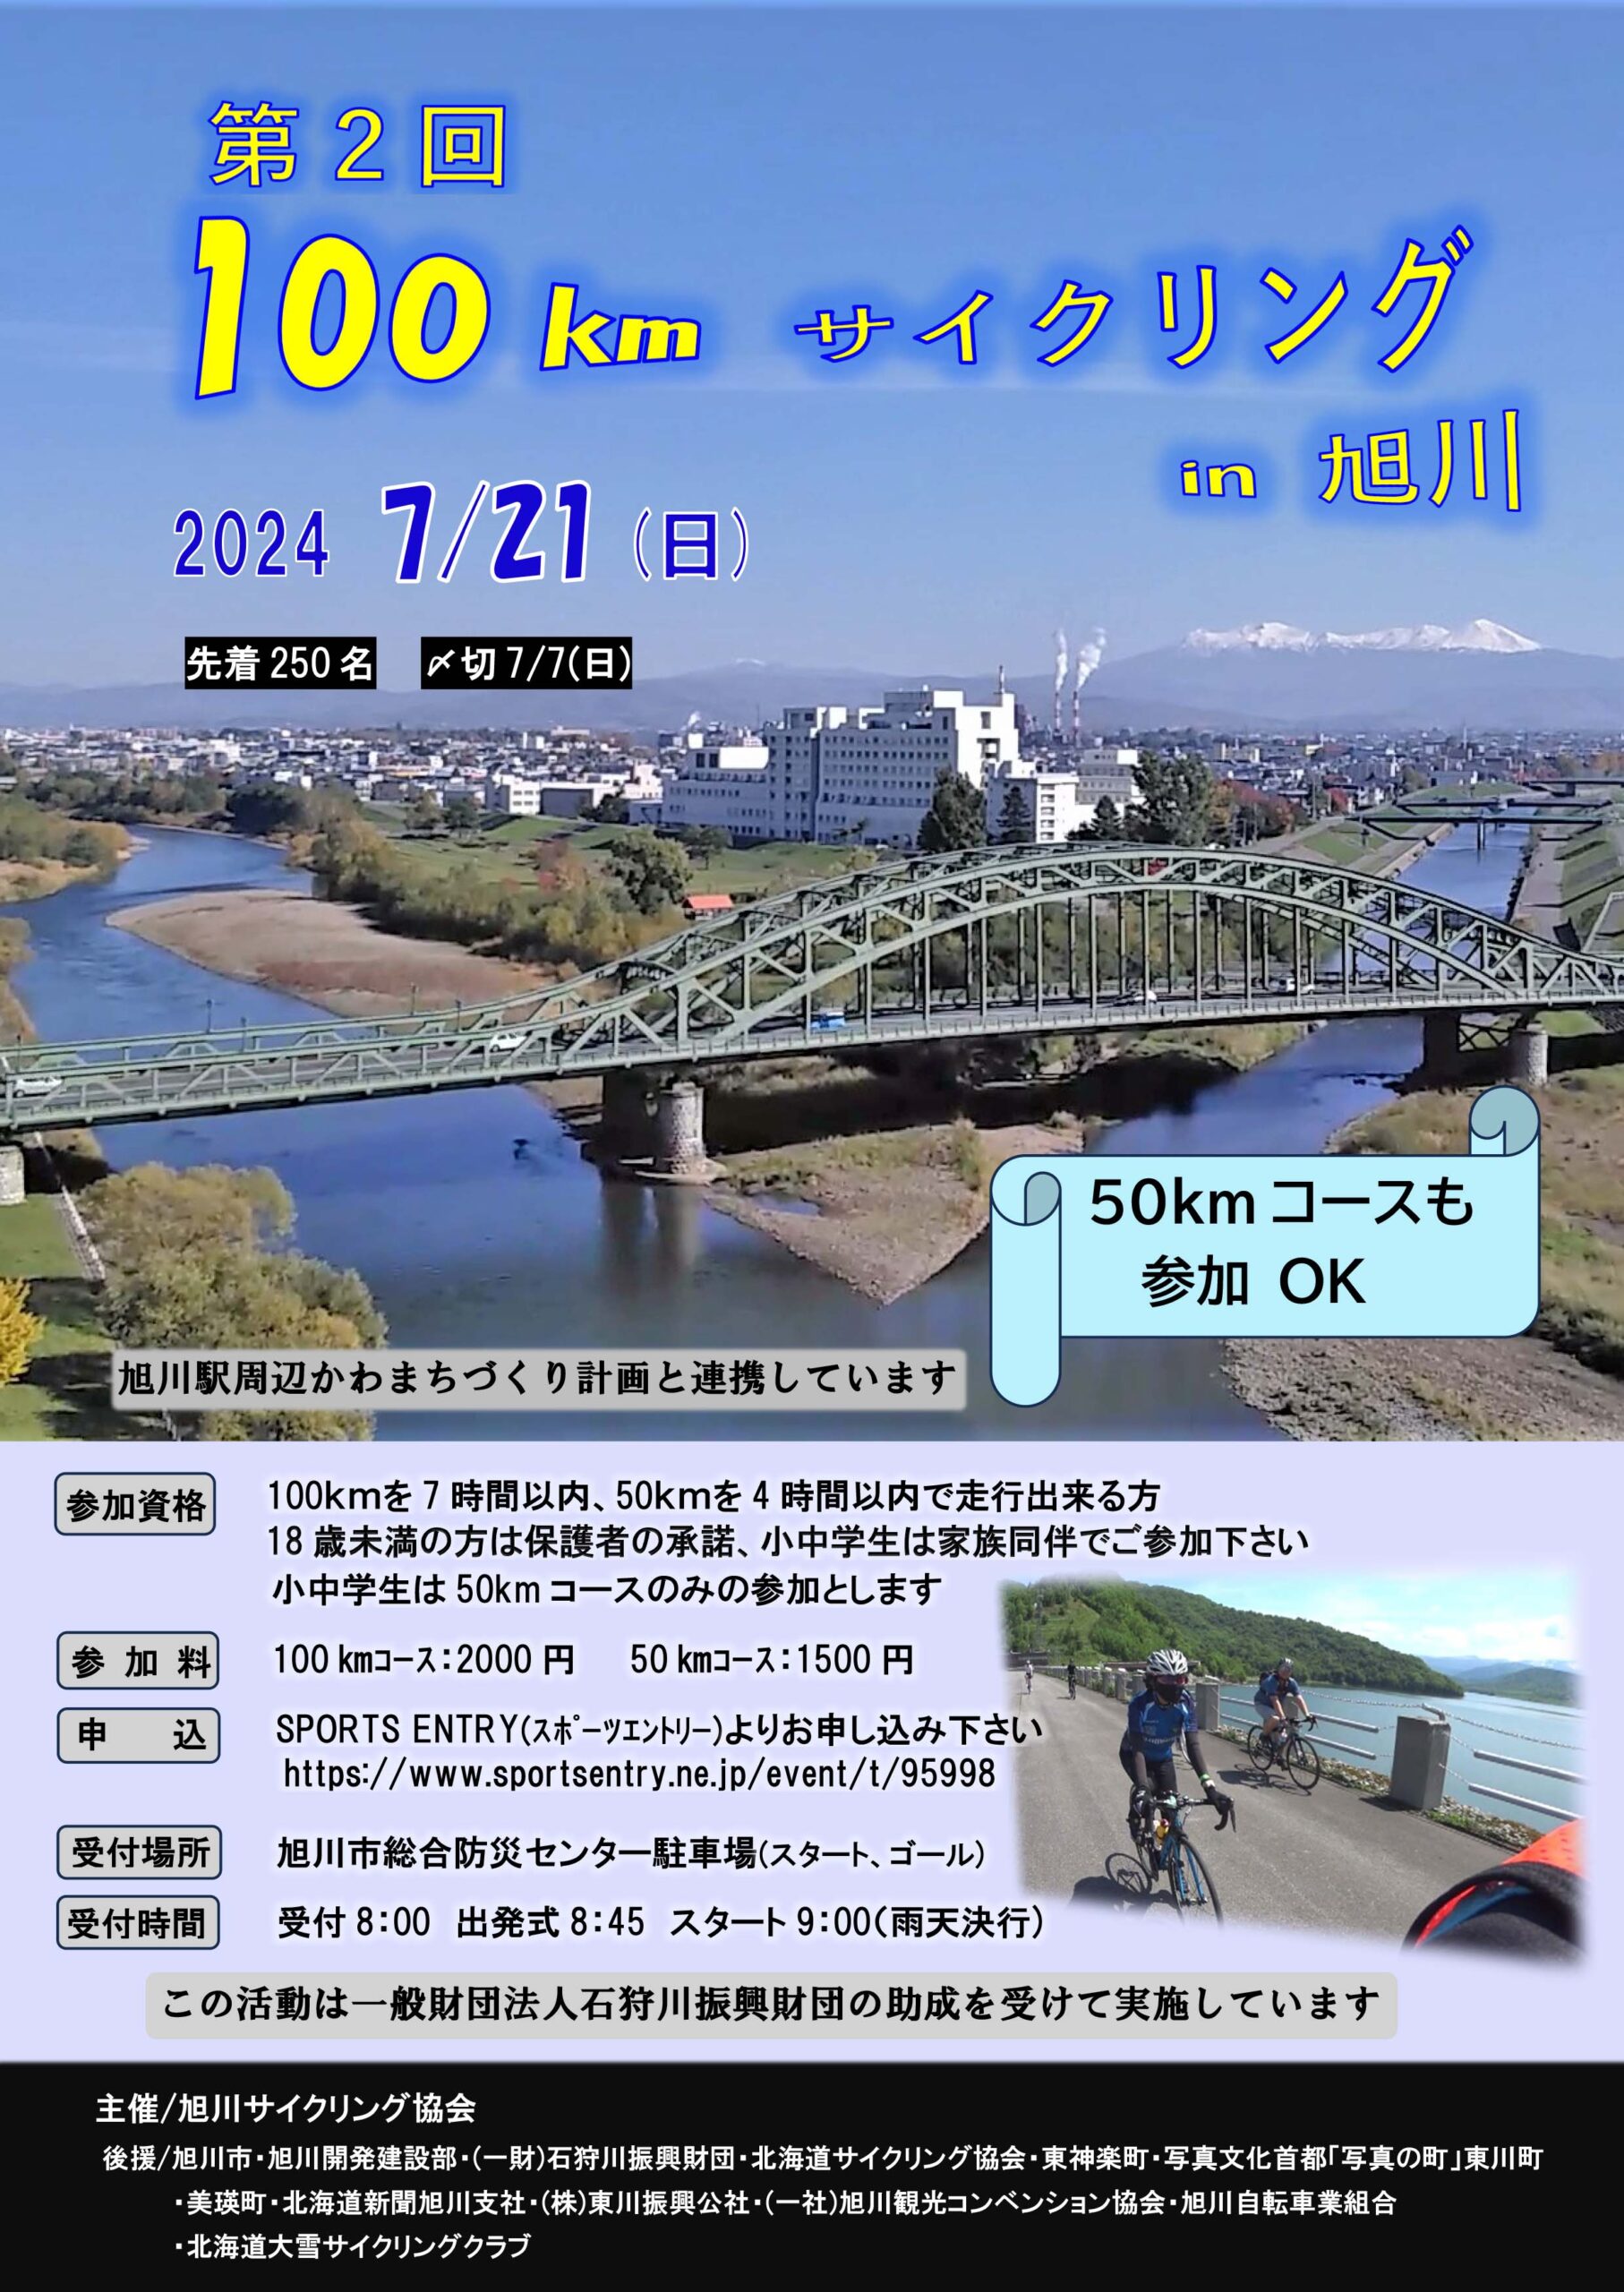 第2回100kmサイクリングin旭川ポスター